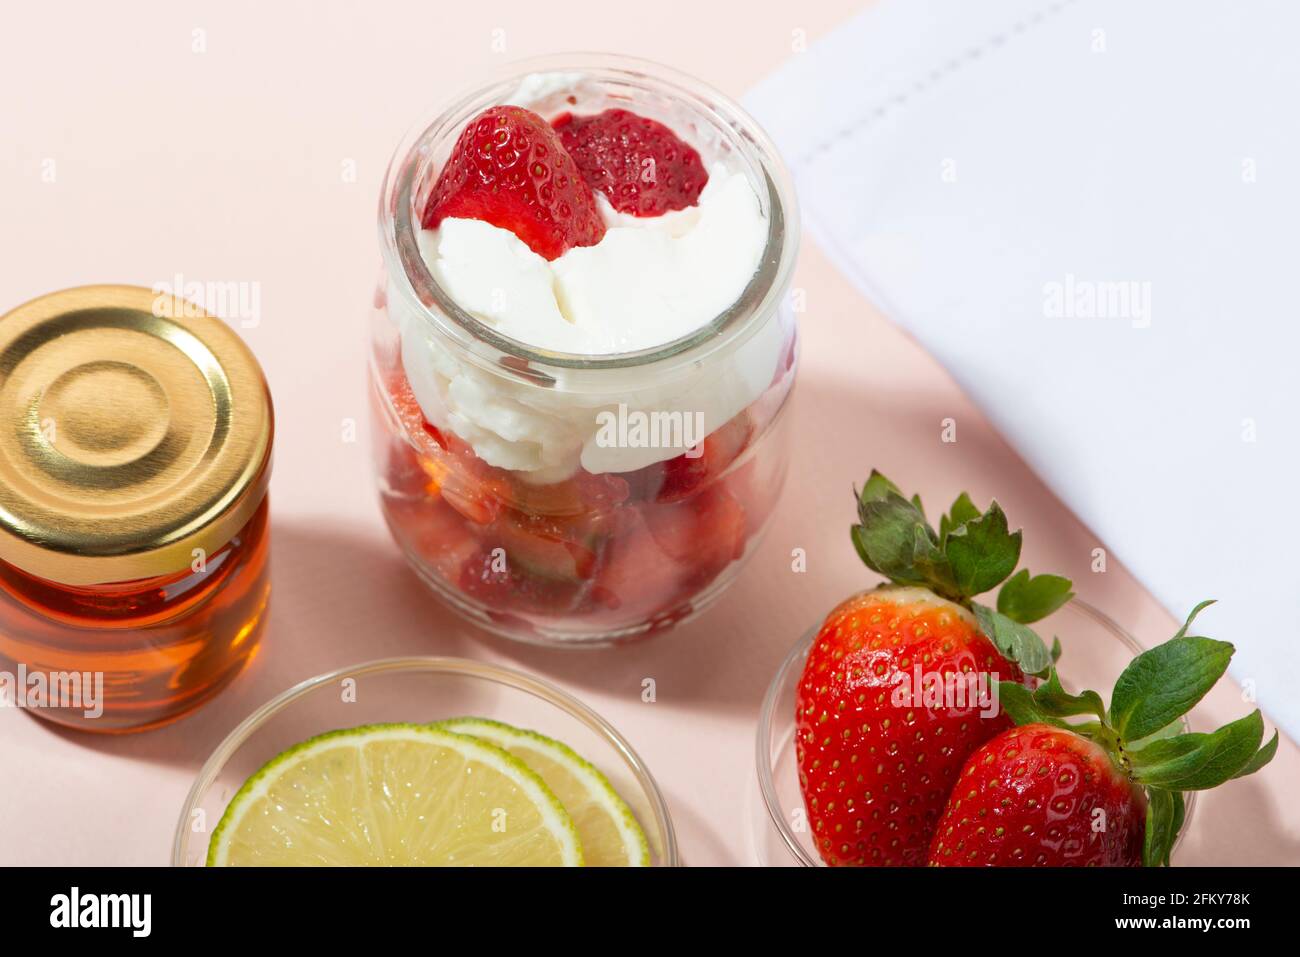 Hausgemachte Erdbeer Gesichtsmaske Zutaten: Erdbeere, Joghurt, Honig,  Zitrone. DIY hausgemachte natürliche Hautpflegeprodukte Stockfotografie -  Alamy